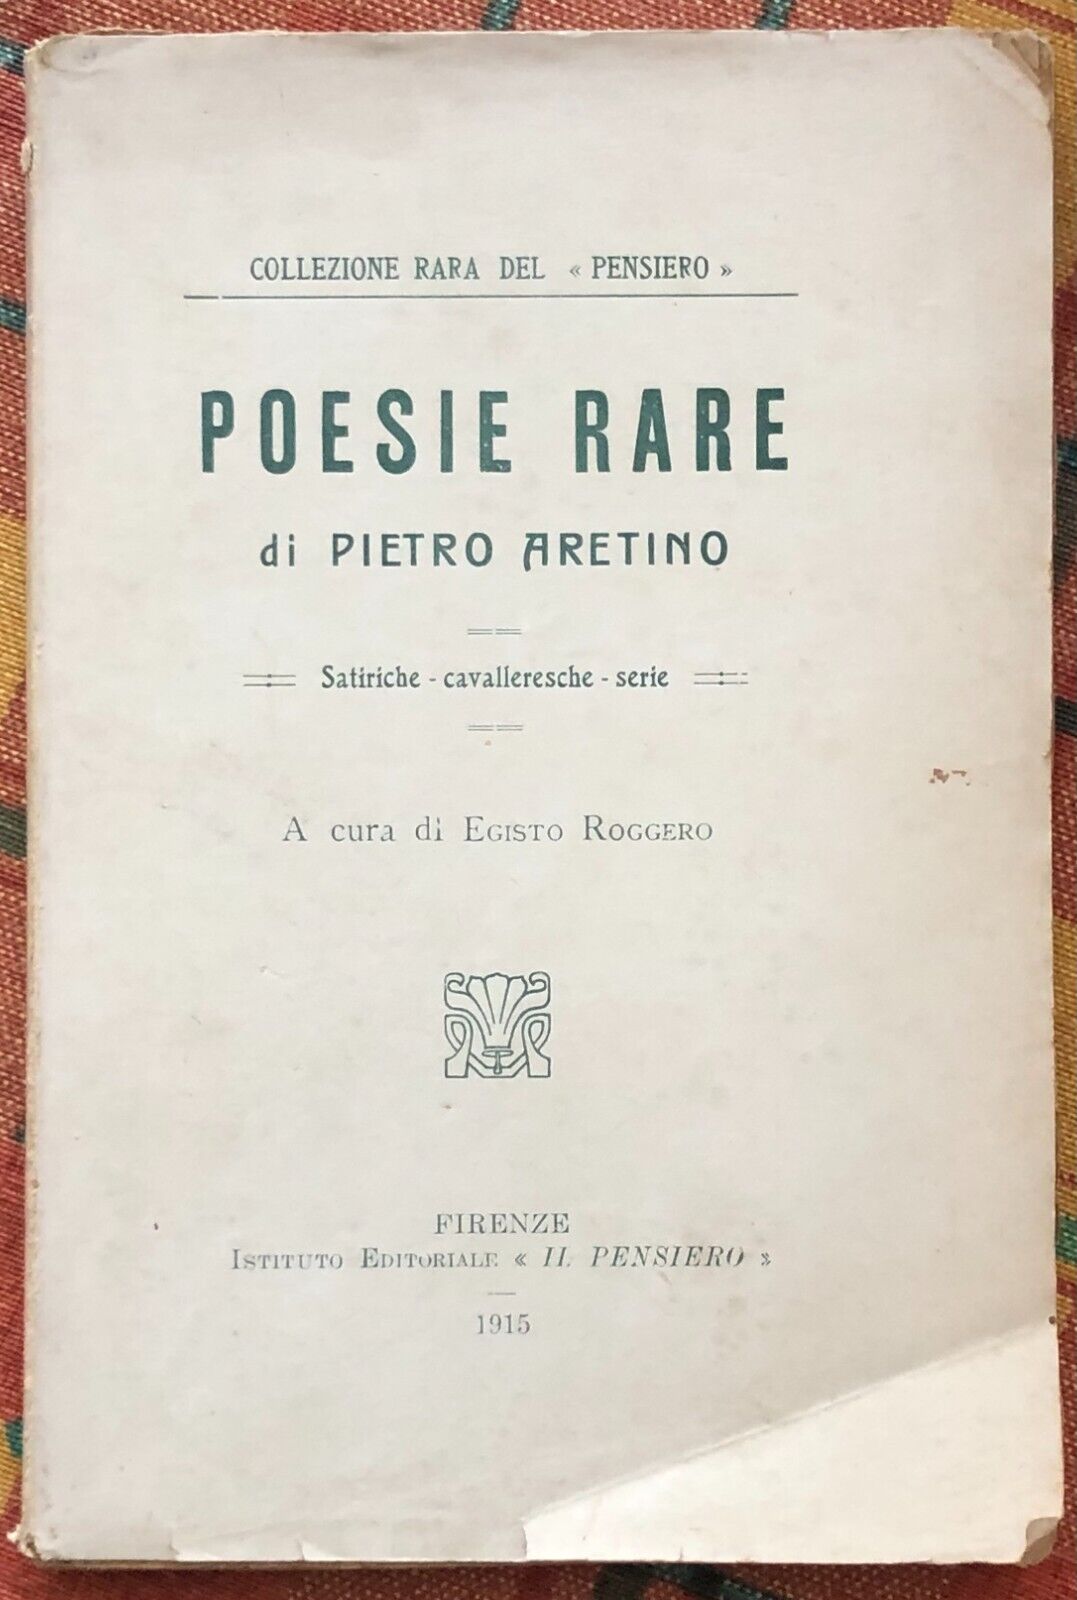  Poesie rare di Pietro Aretino, 1915, Istituto Editoriale Il Pensiero